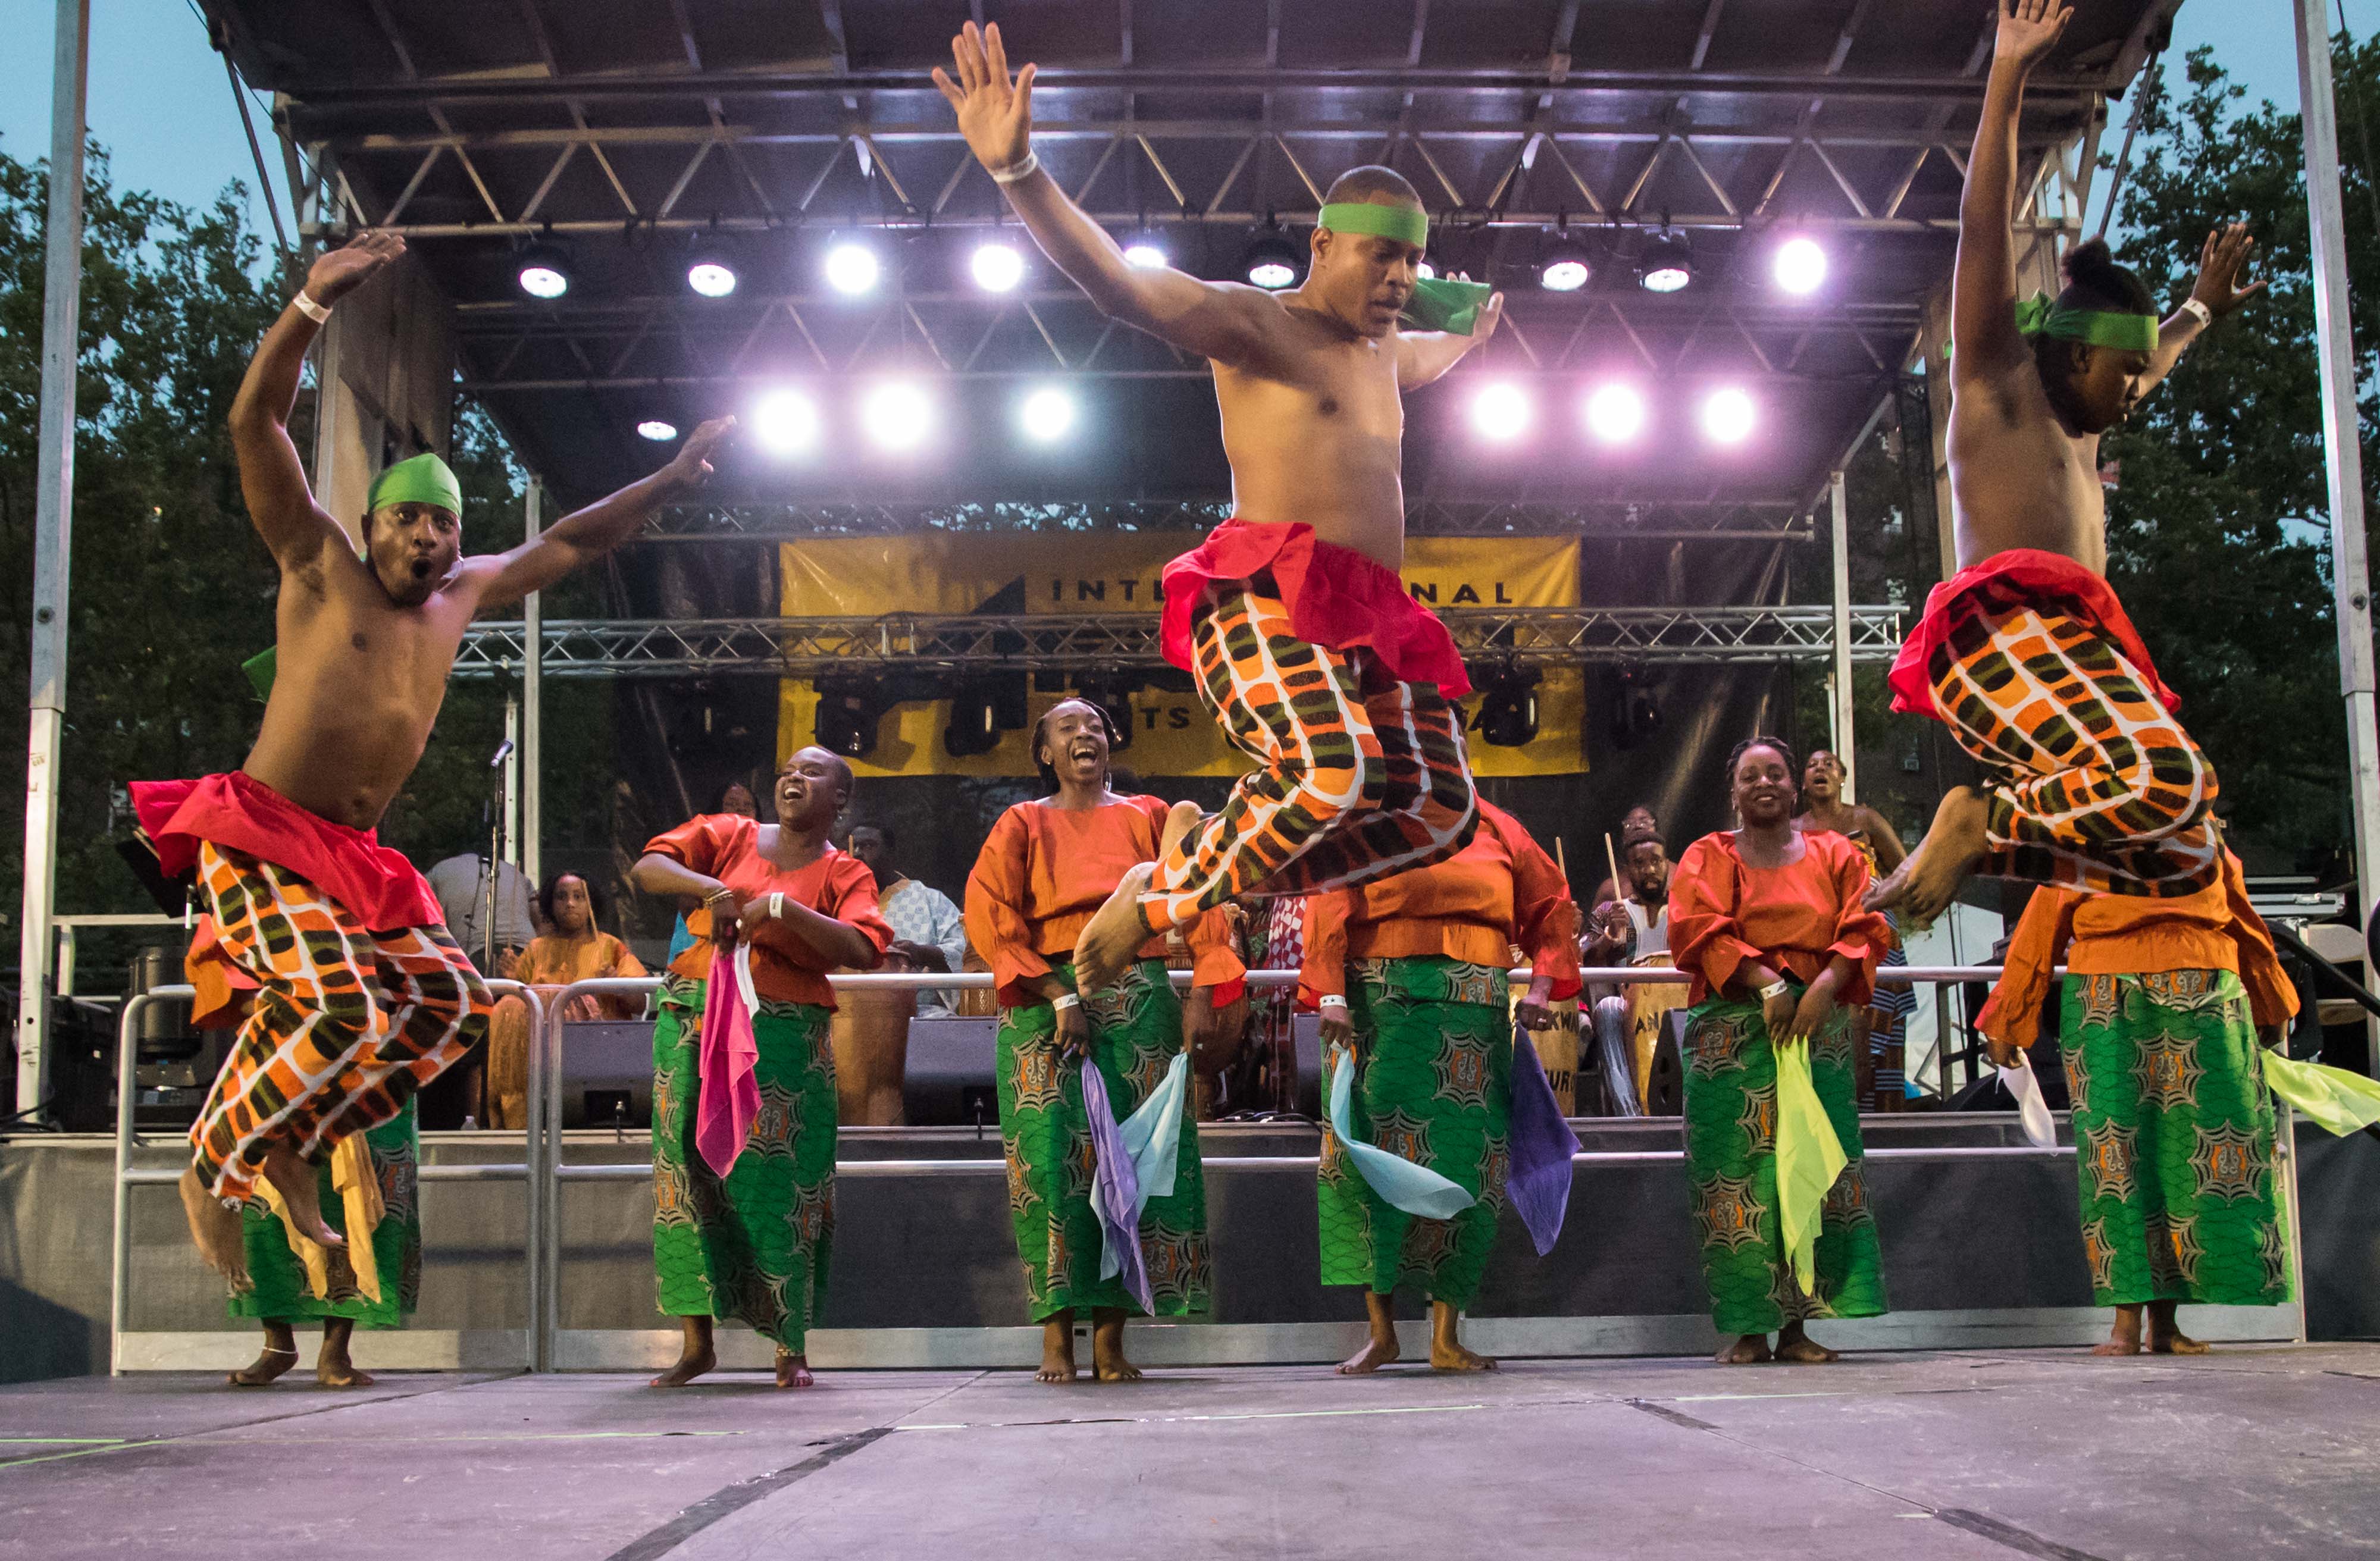 Brooklyn’s International African Arts Festival unites New York